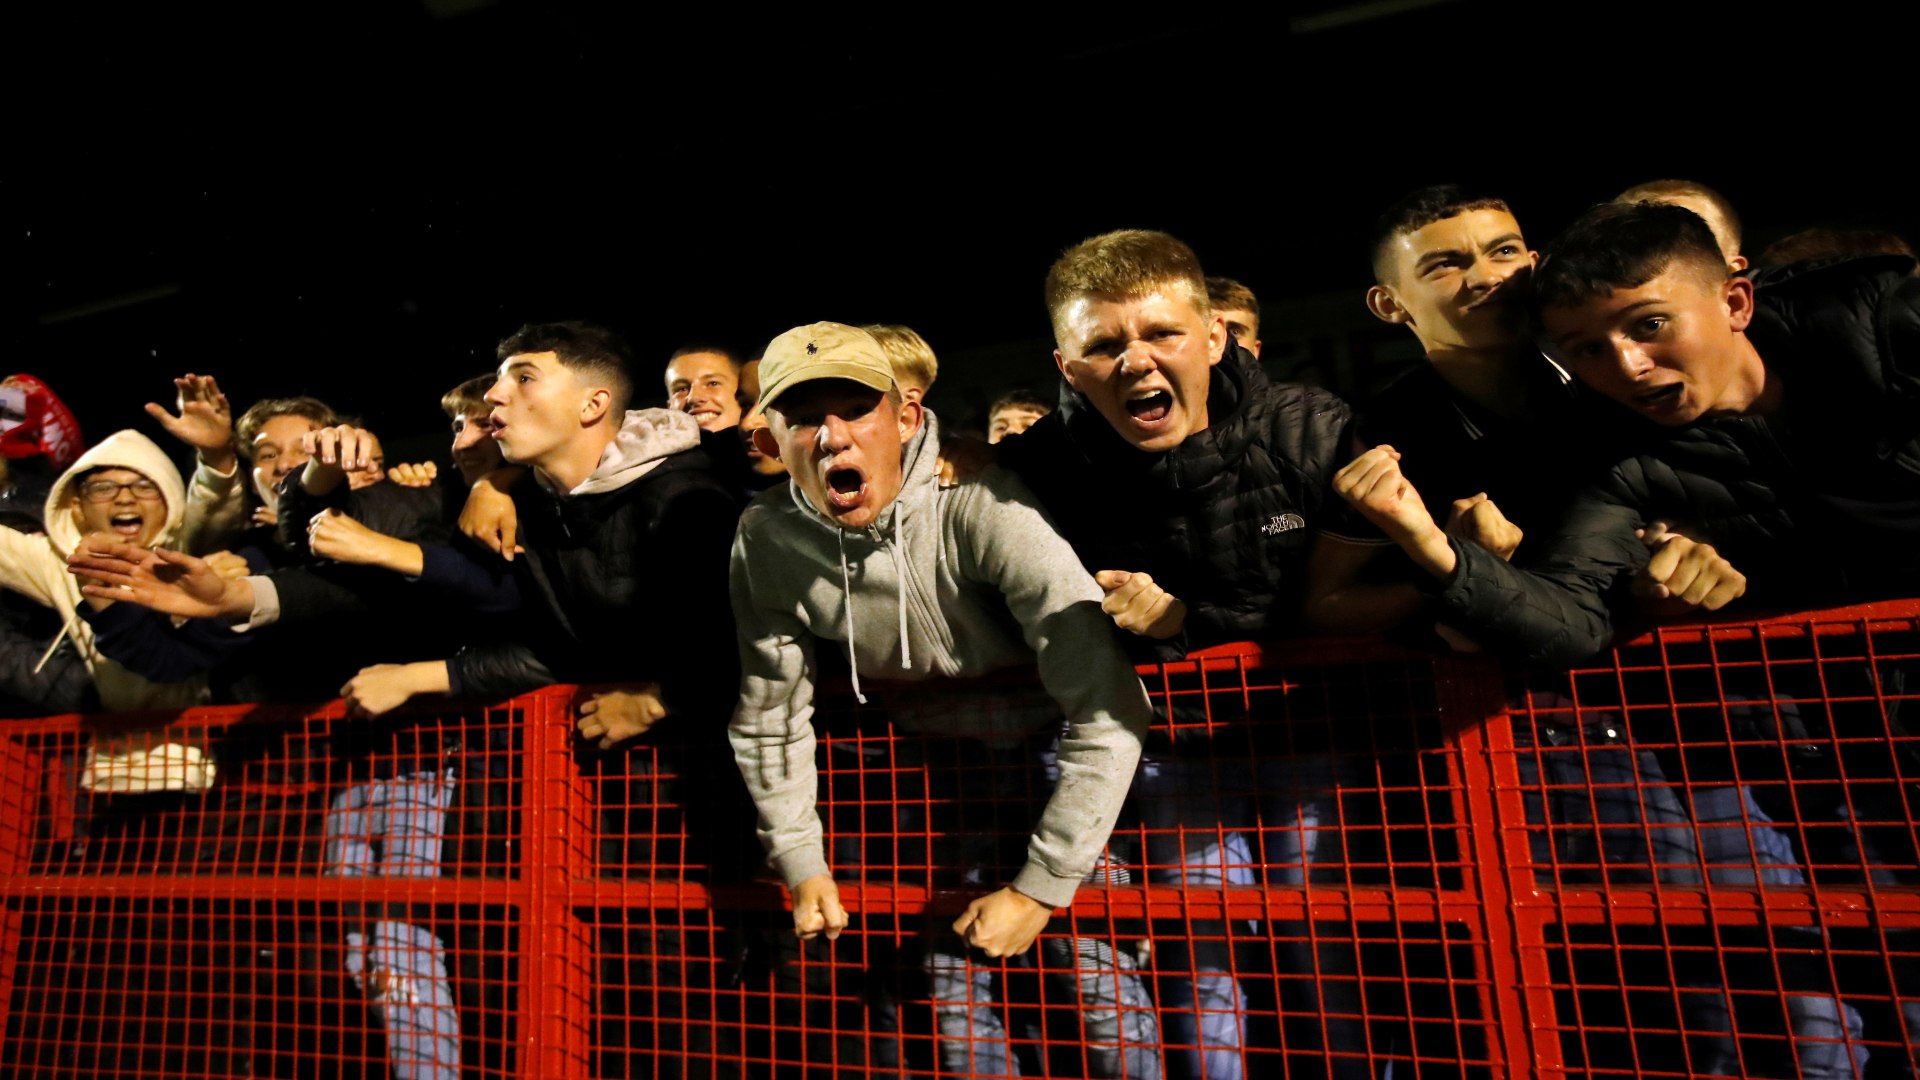 crawley fans